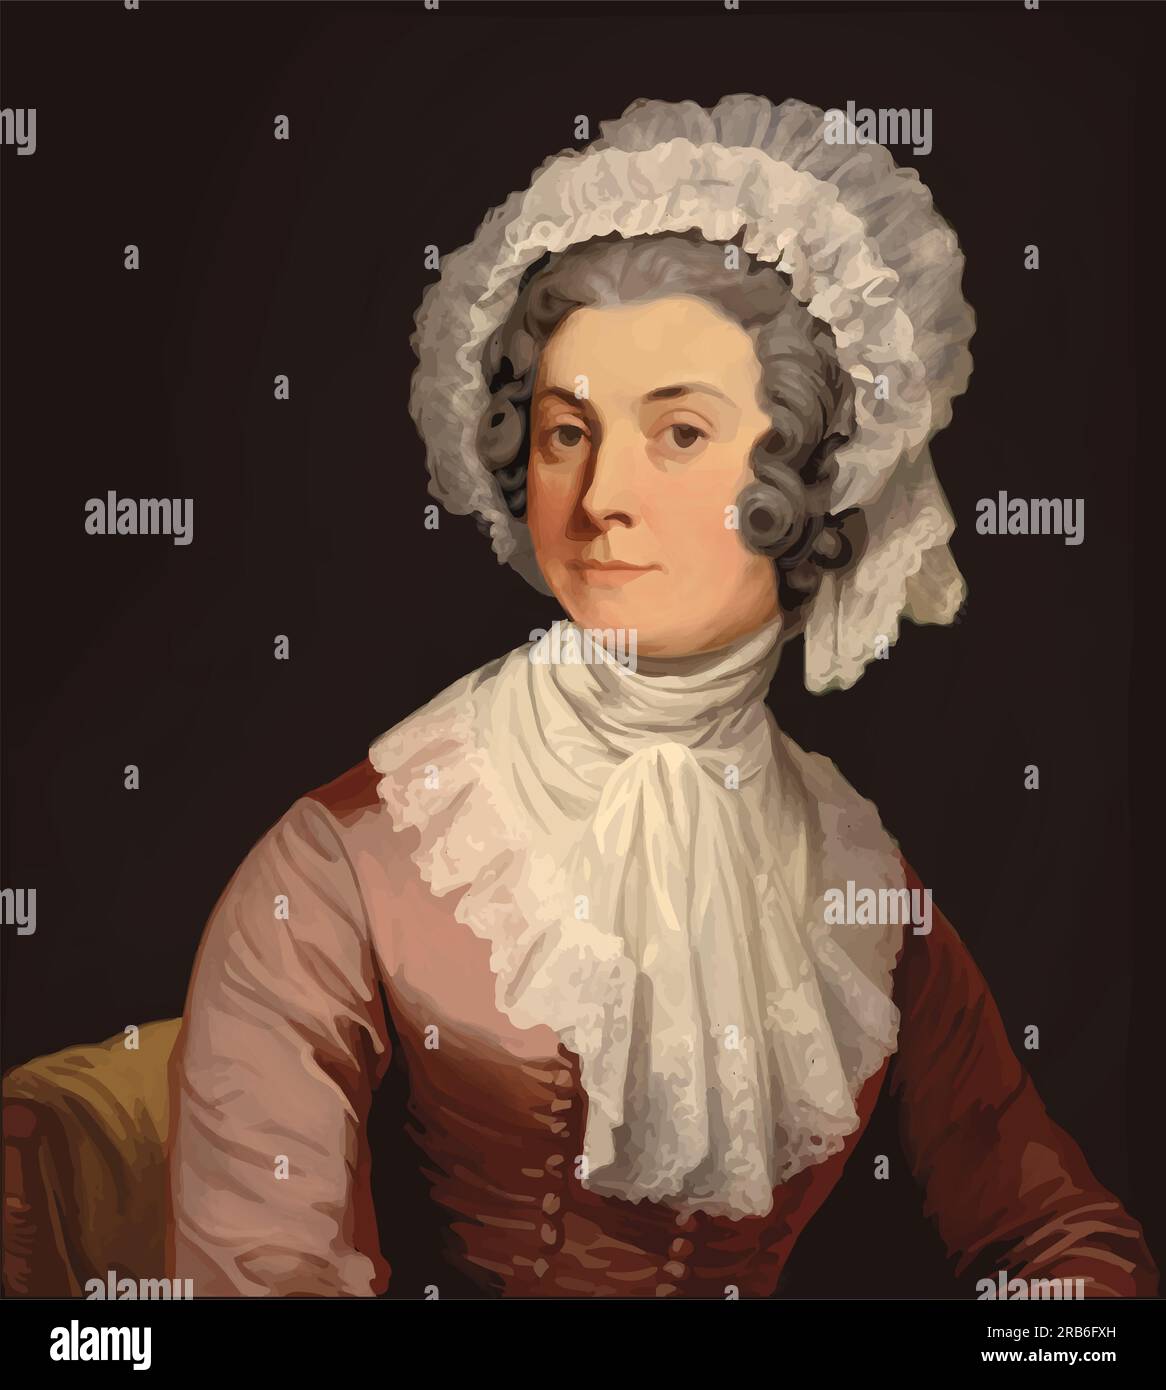 Vektorporträt von Abigail Adams (1744-1818), Ehefrau des 2. US-Präsidenten John Adams. Stock Vektor